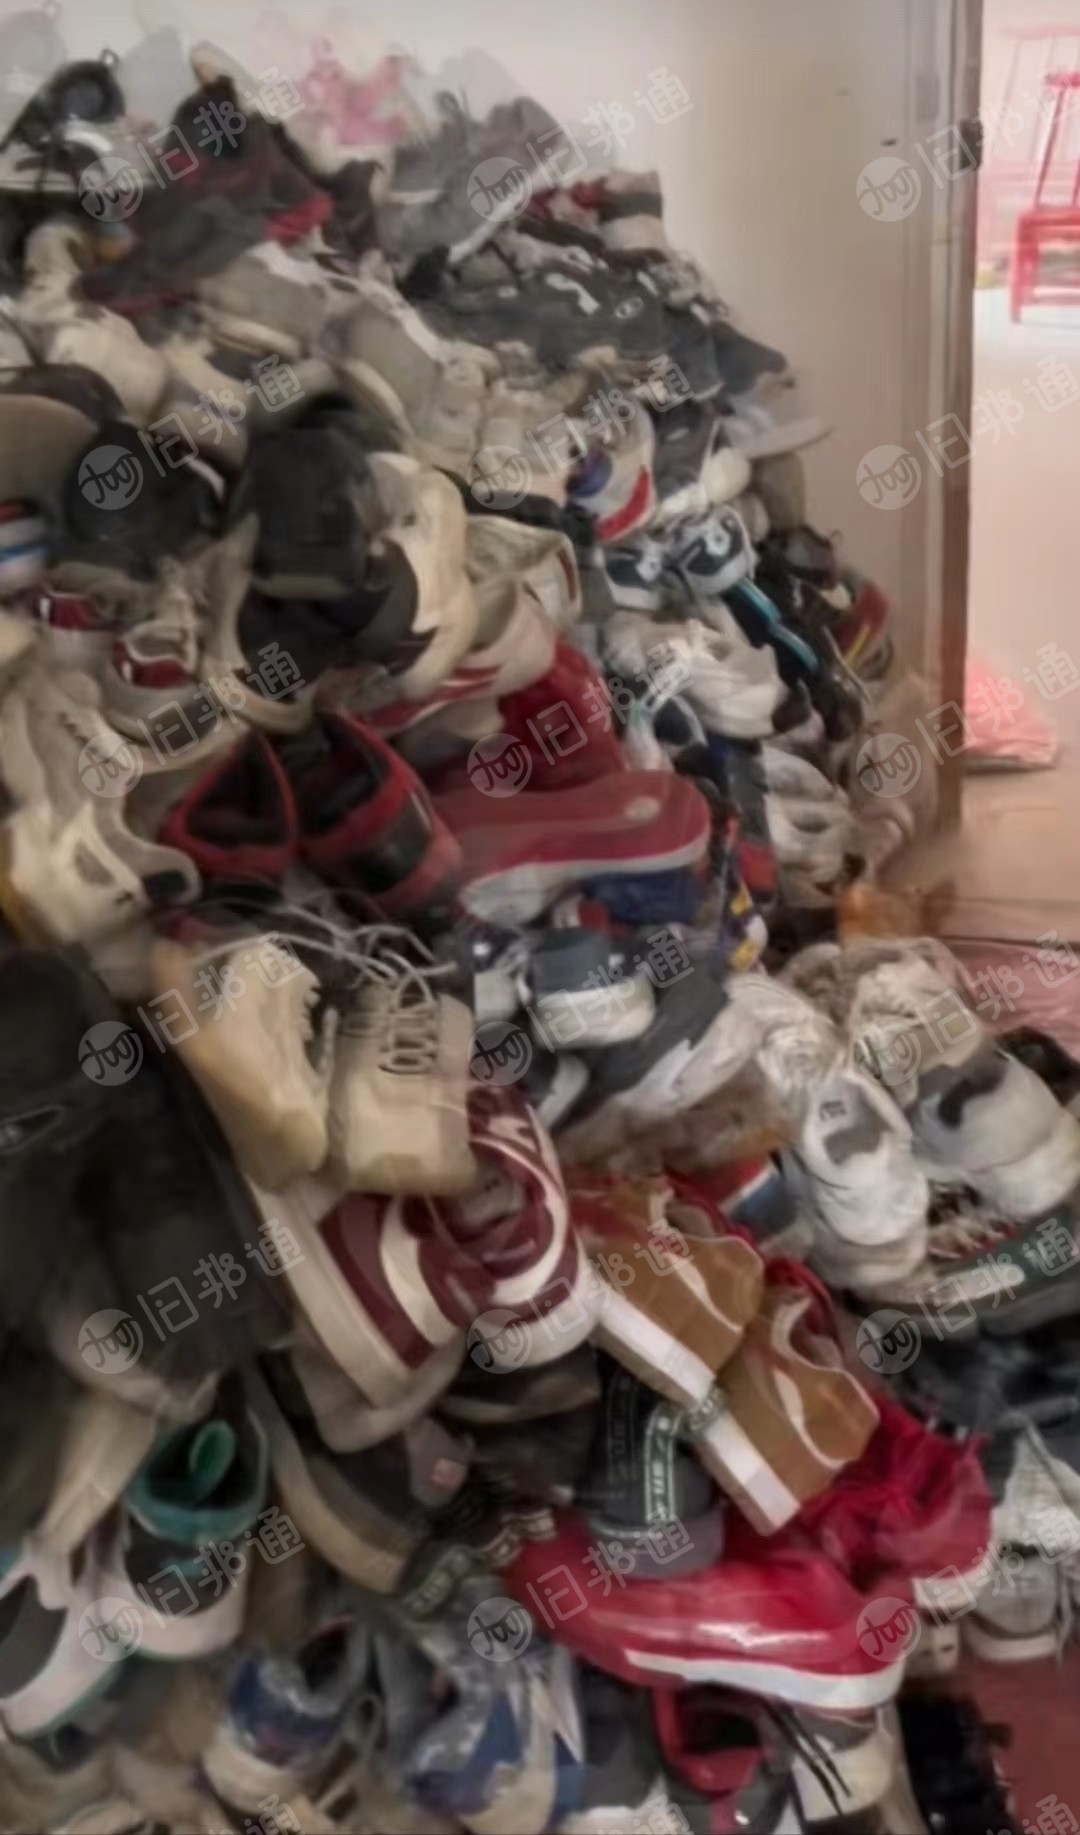 武汉周边附近三百公里收旧鞋子。包包。统货，桶子货精品货大量现金求购.过秤给钱。